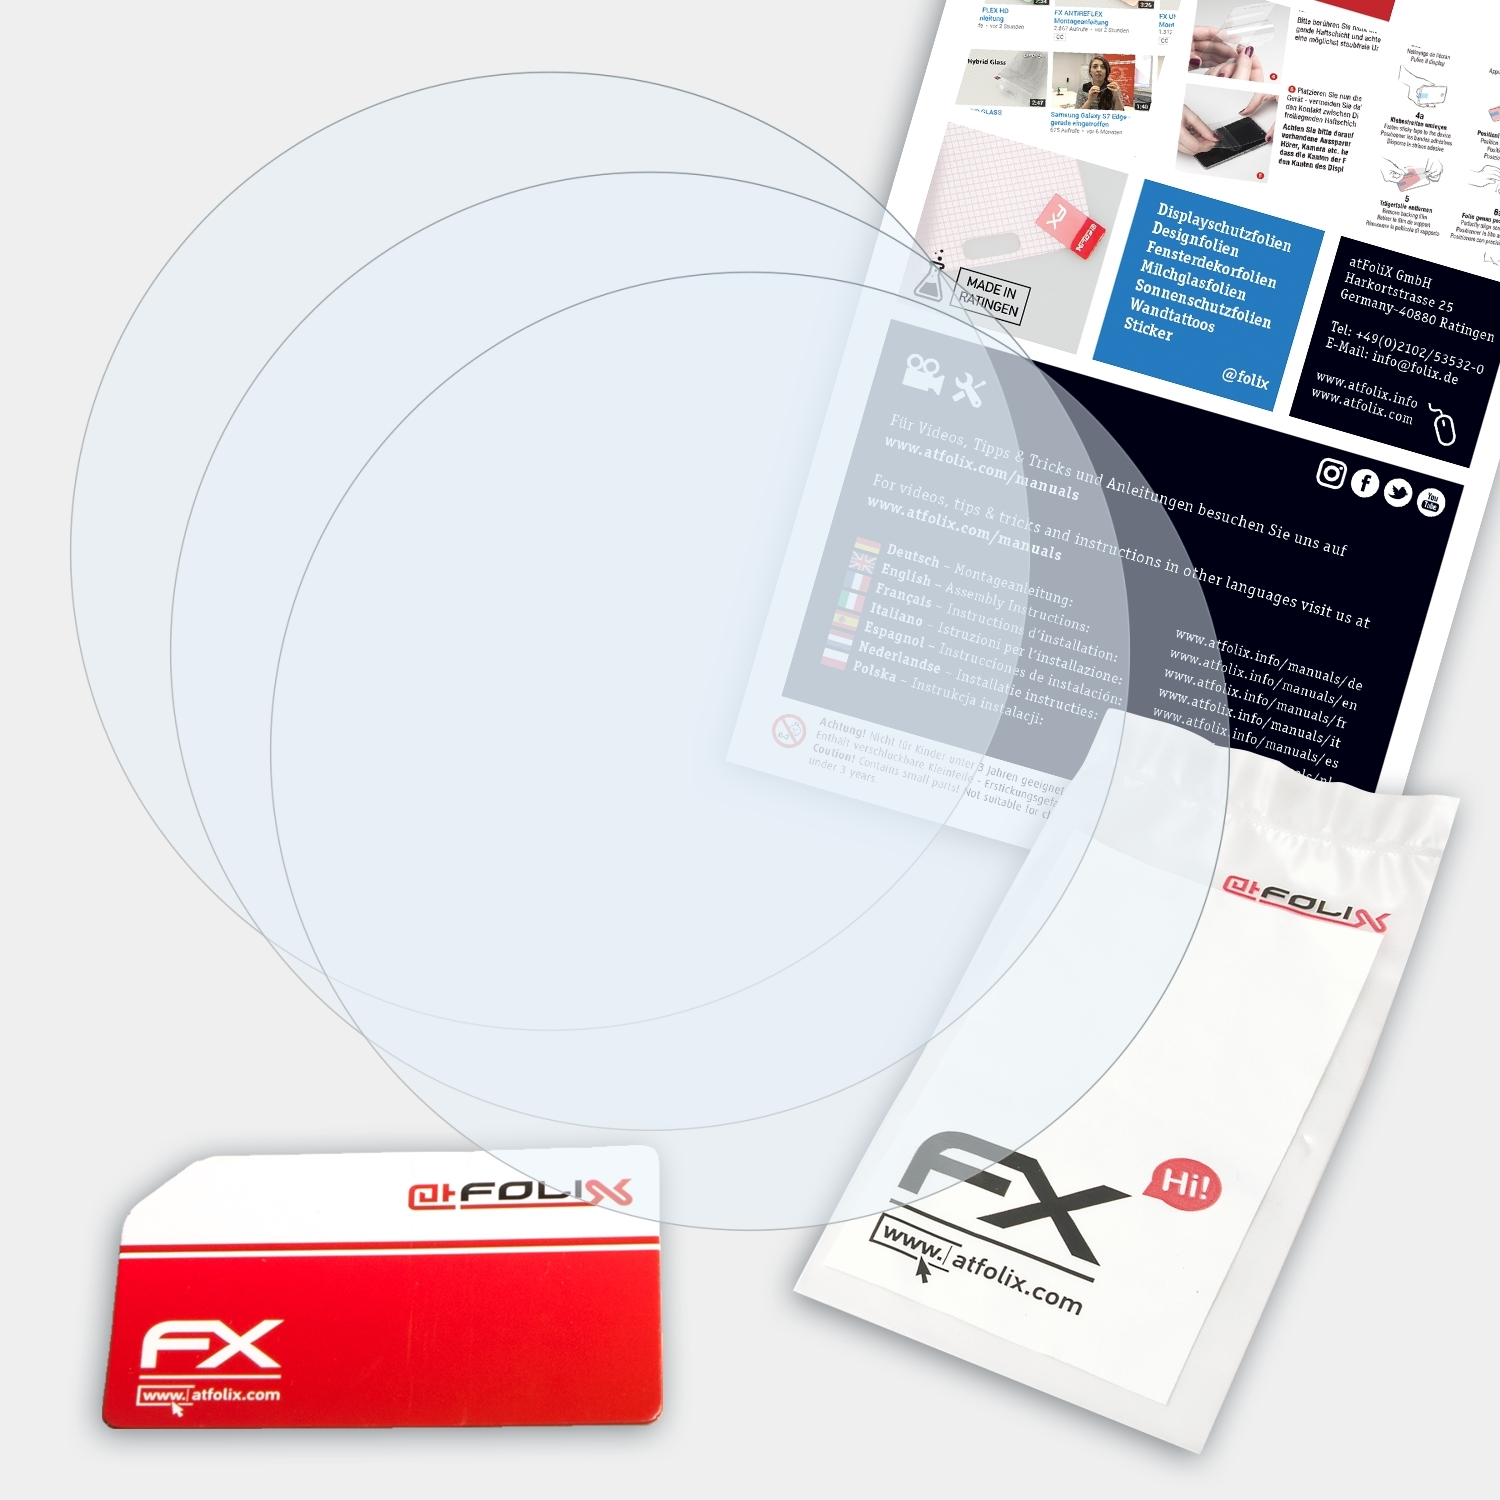 Fossil FX-Clear Pursuit) 3x Displayschutz(für Modern Q ATFOLIX